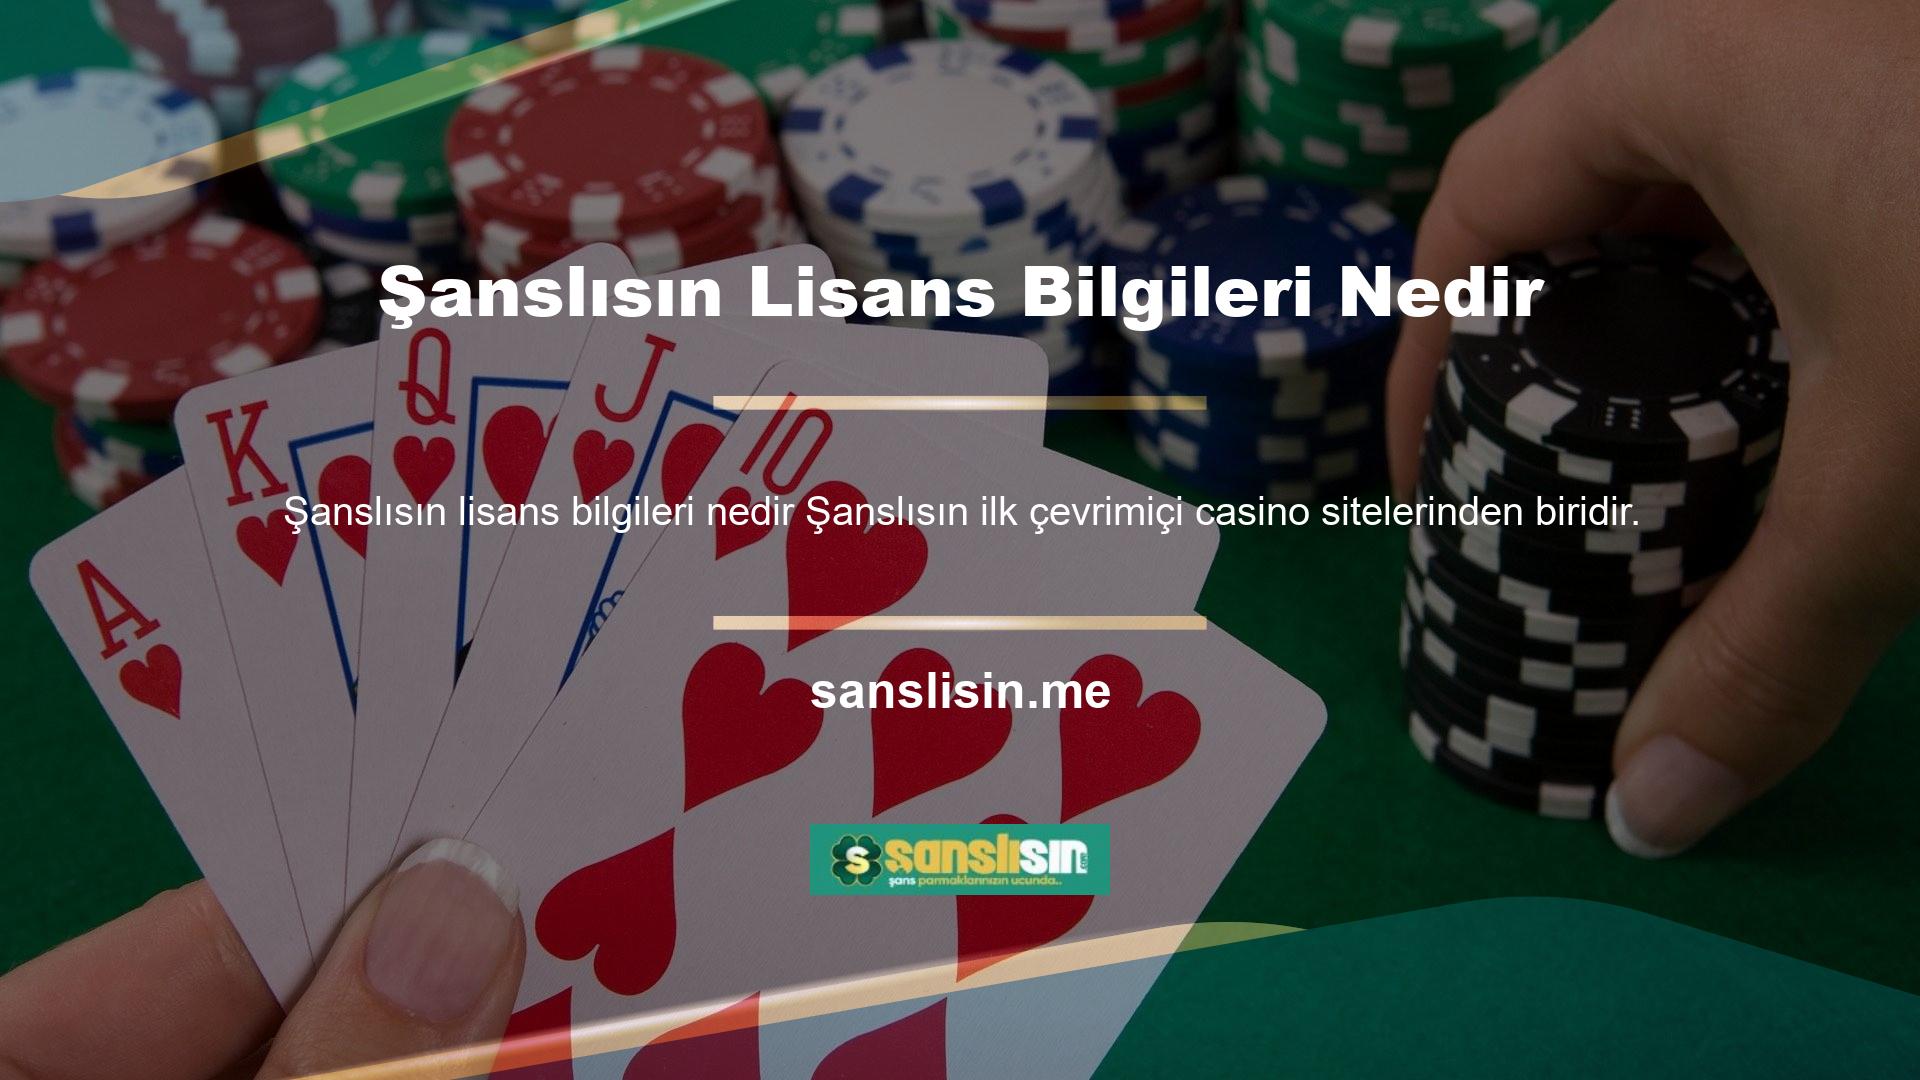 Türkiye'de kısa bir süre faaliyet göstermeye başlayan Şanslısın, yabancı bir casino sitesi olması nedeniyle yasa dışı casino sitesi olarak değerlendirilmektedir